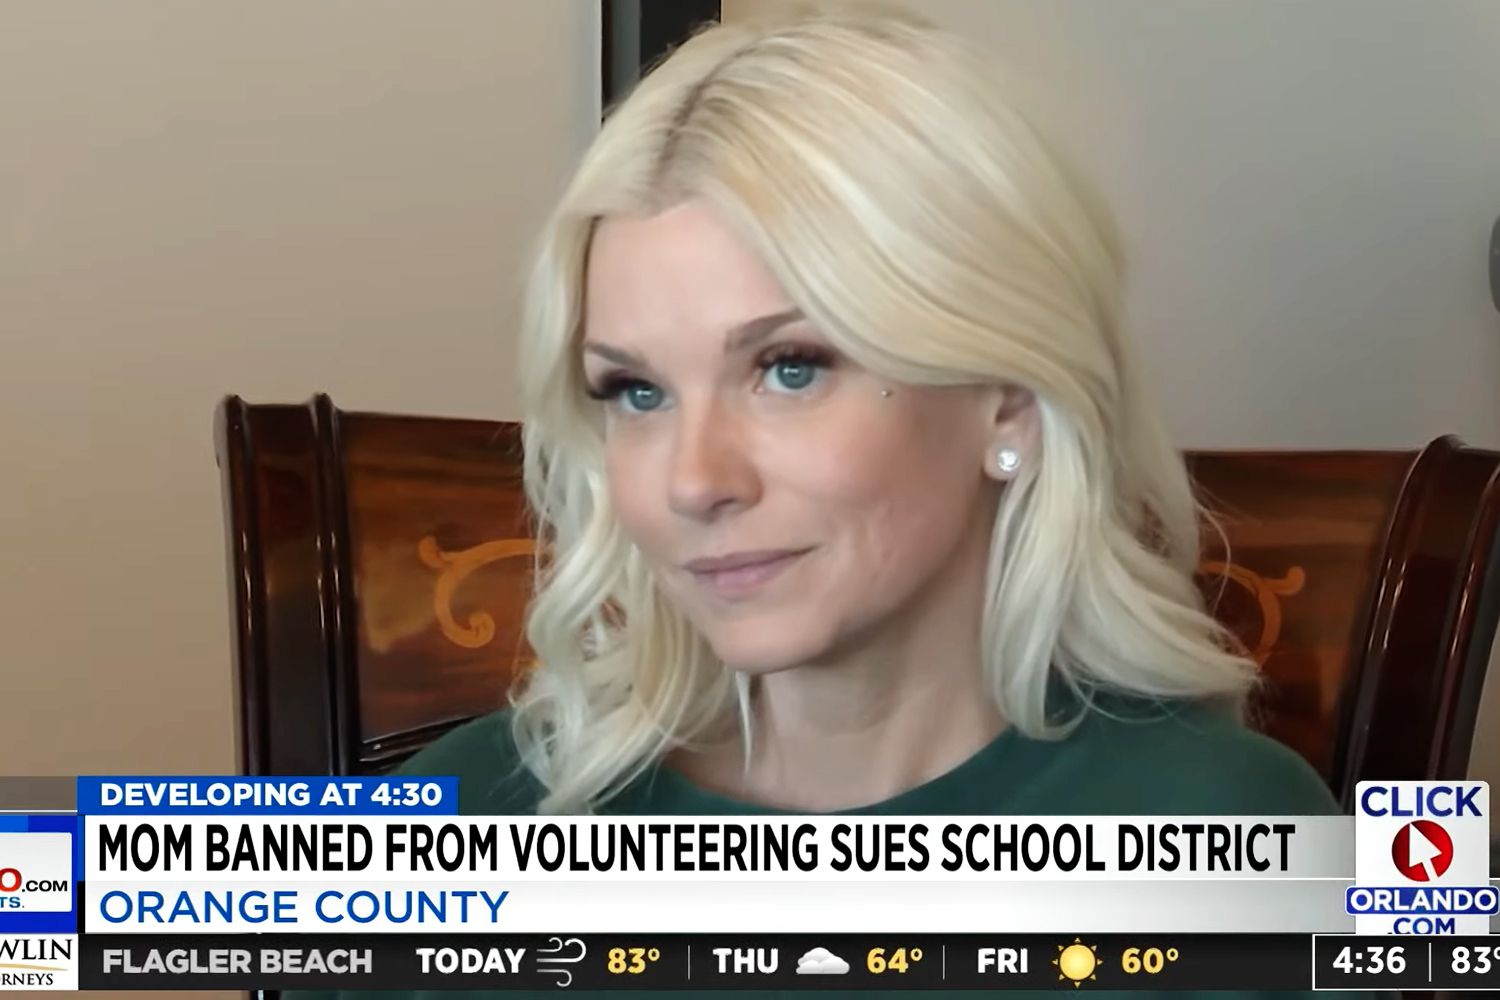 2 की फ्लोरिडा मॉम ने कथित तौर पर केवल फैन्स अकाउंट की वजह से संस के स्कूल से प्रतिबंधित होने के बाद मुकदमा दायर किया